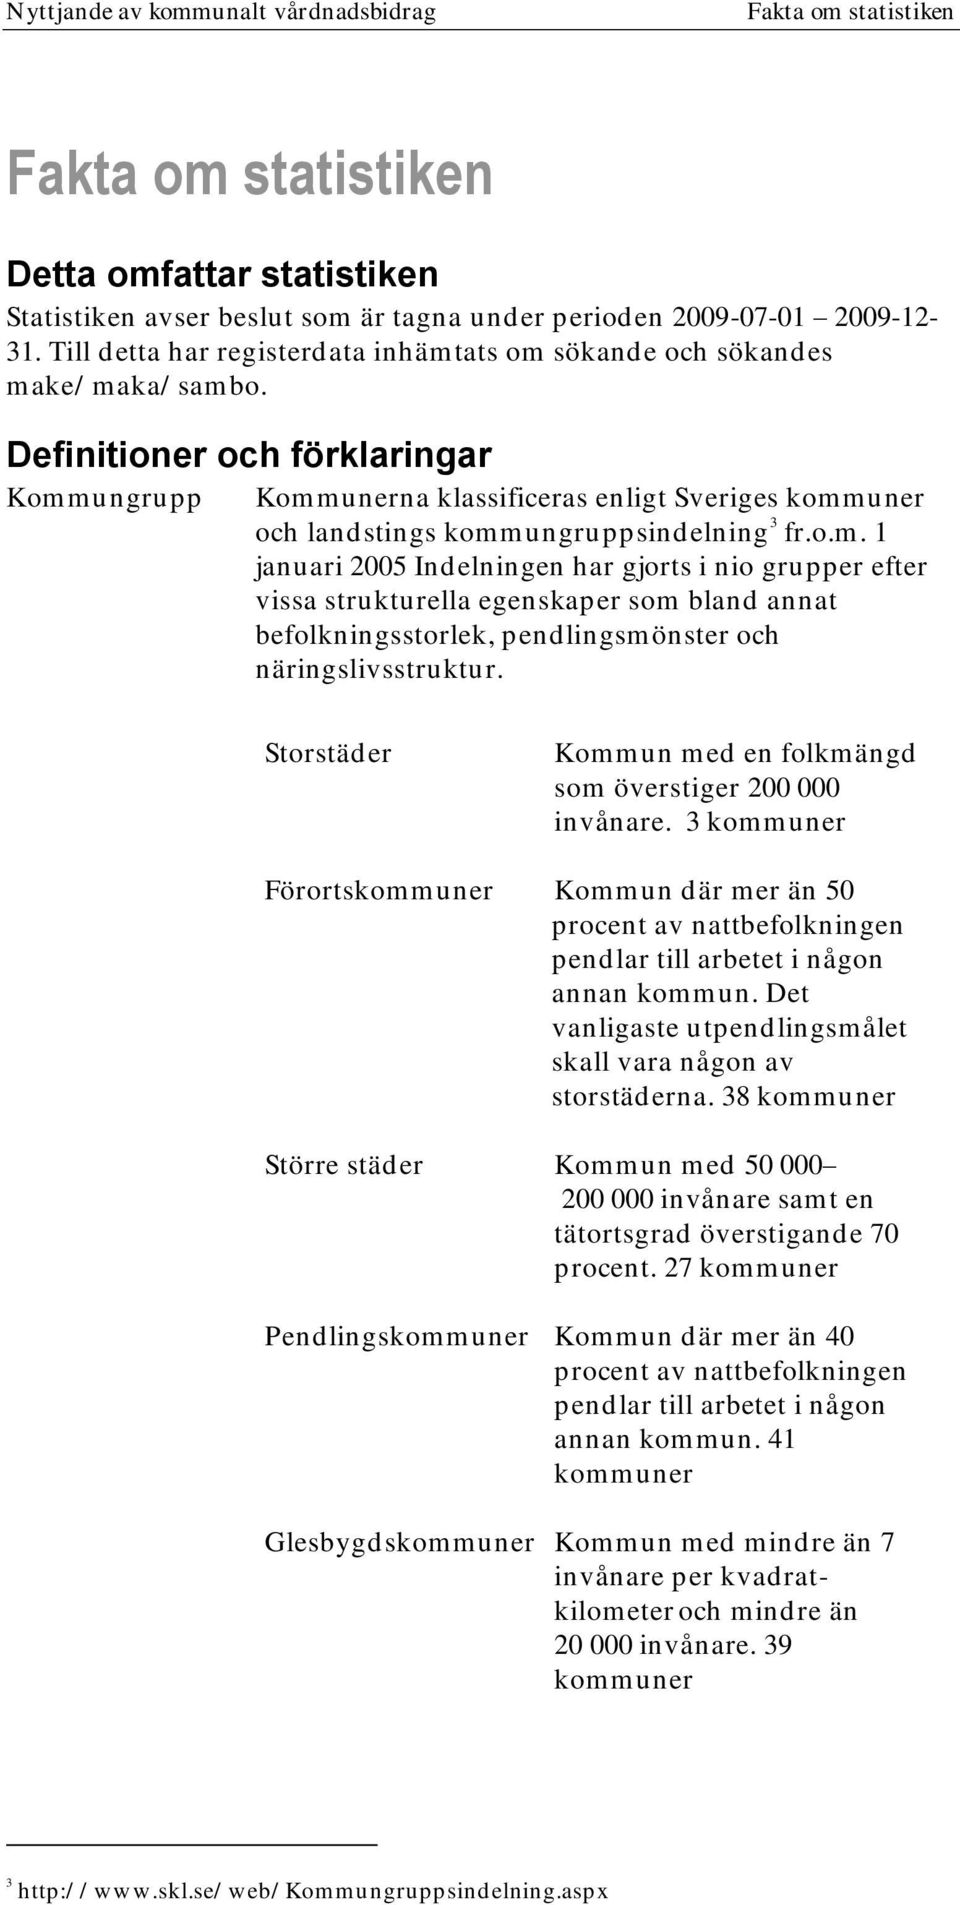 Definitioner och förklaringar Kommungrupp Kommunerna klassificeras enligt Sveriges kommuner och landstings kommungruppsindelning 3 fr.o.m. 1 januari 2005 Indelningen har gjorts i nio grupper efter vissa strukturella egenskaper som bland annat befolkningsstorlek, pendlingsmönster och näringslivsstruktur.